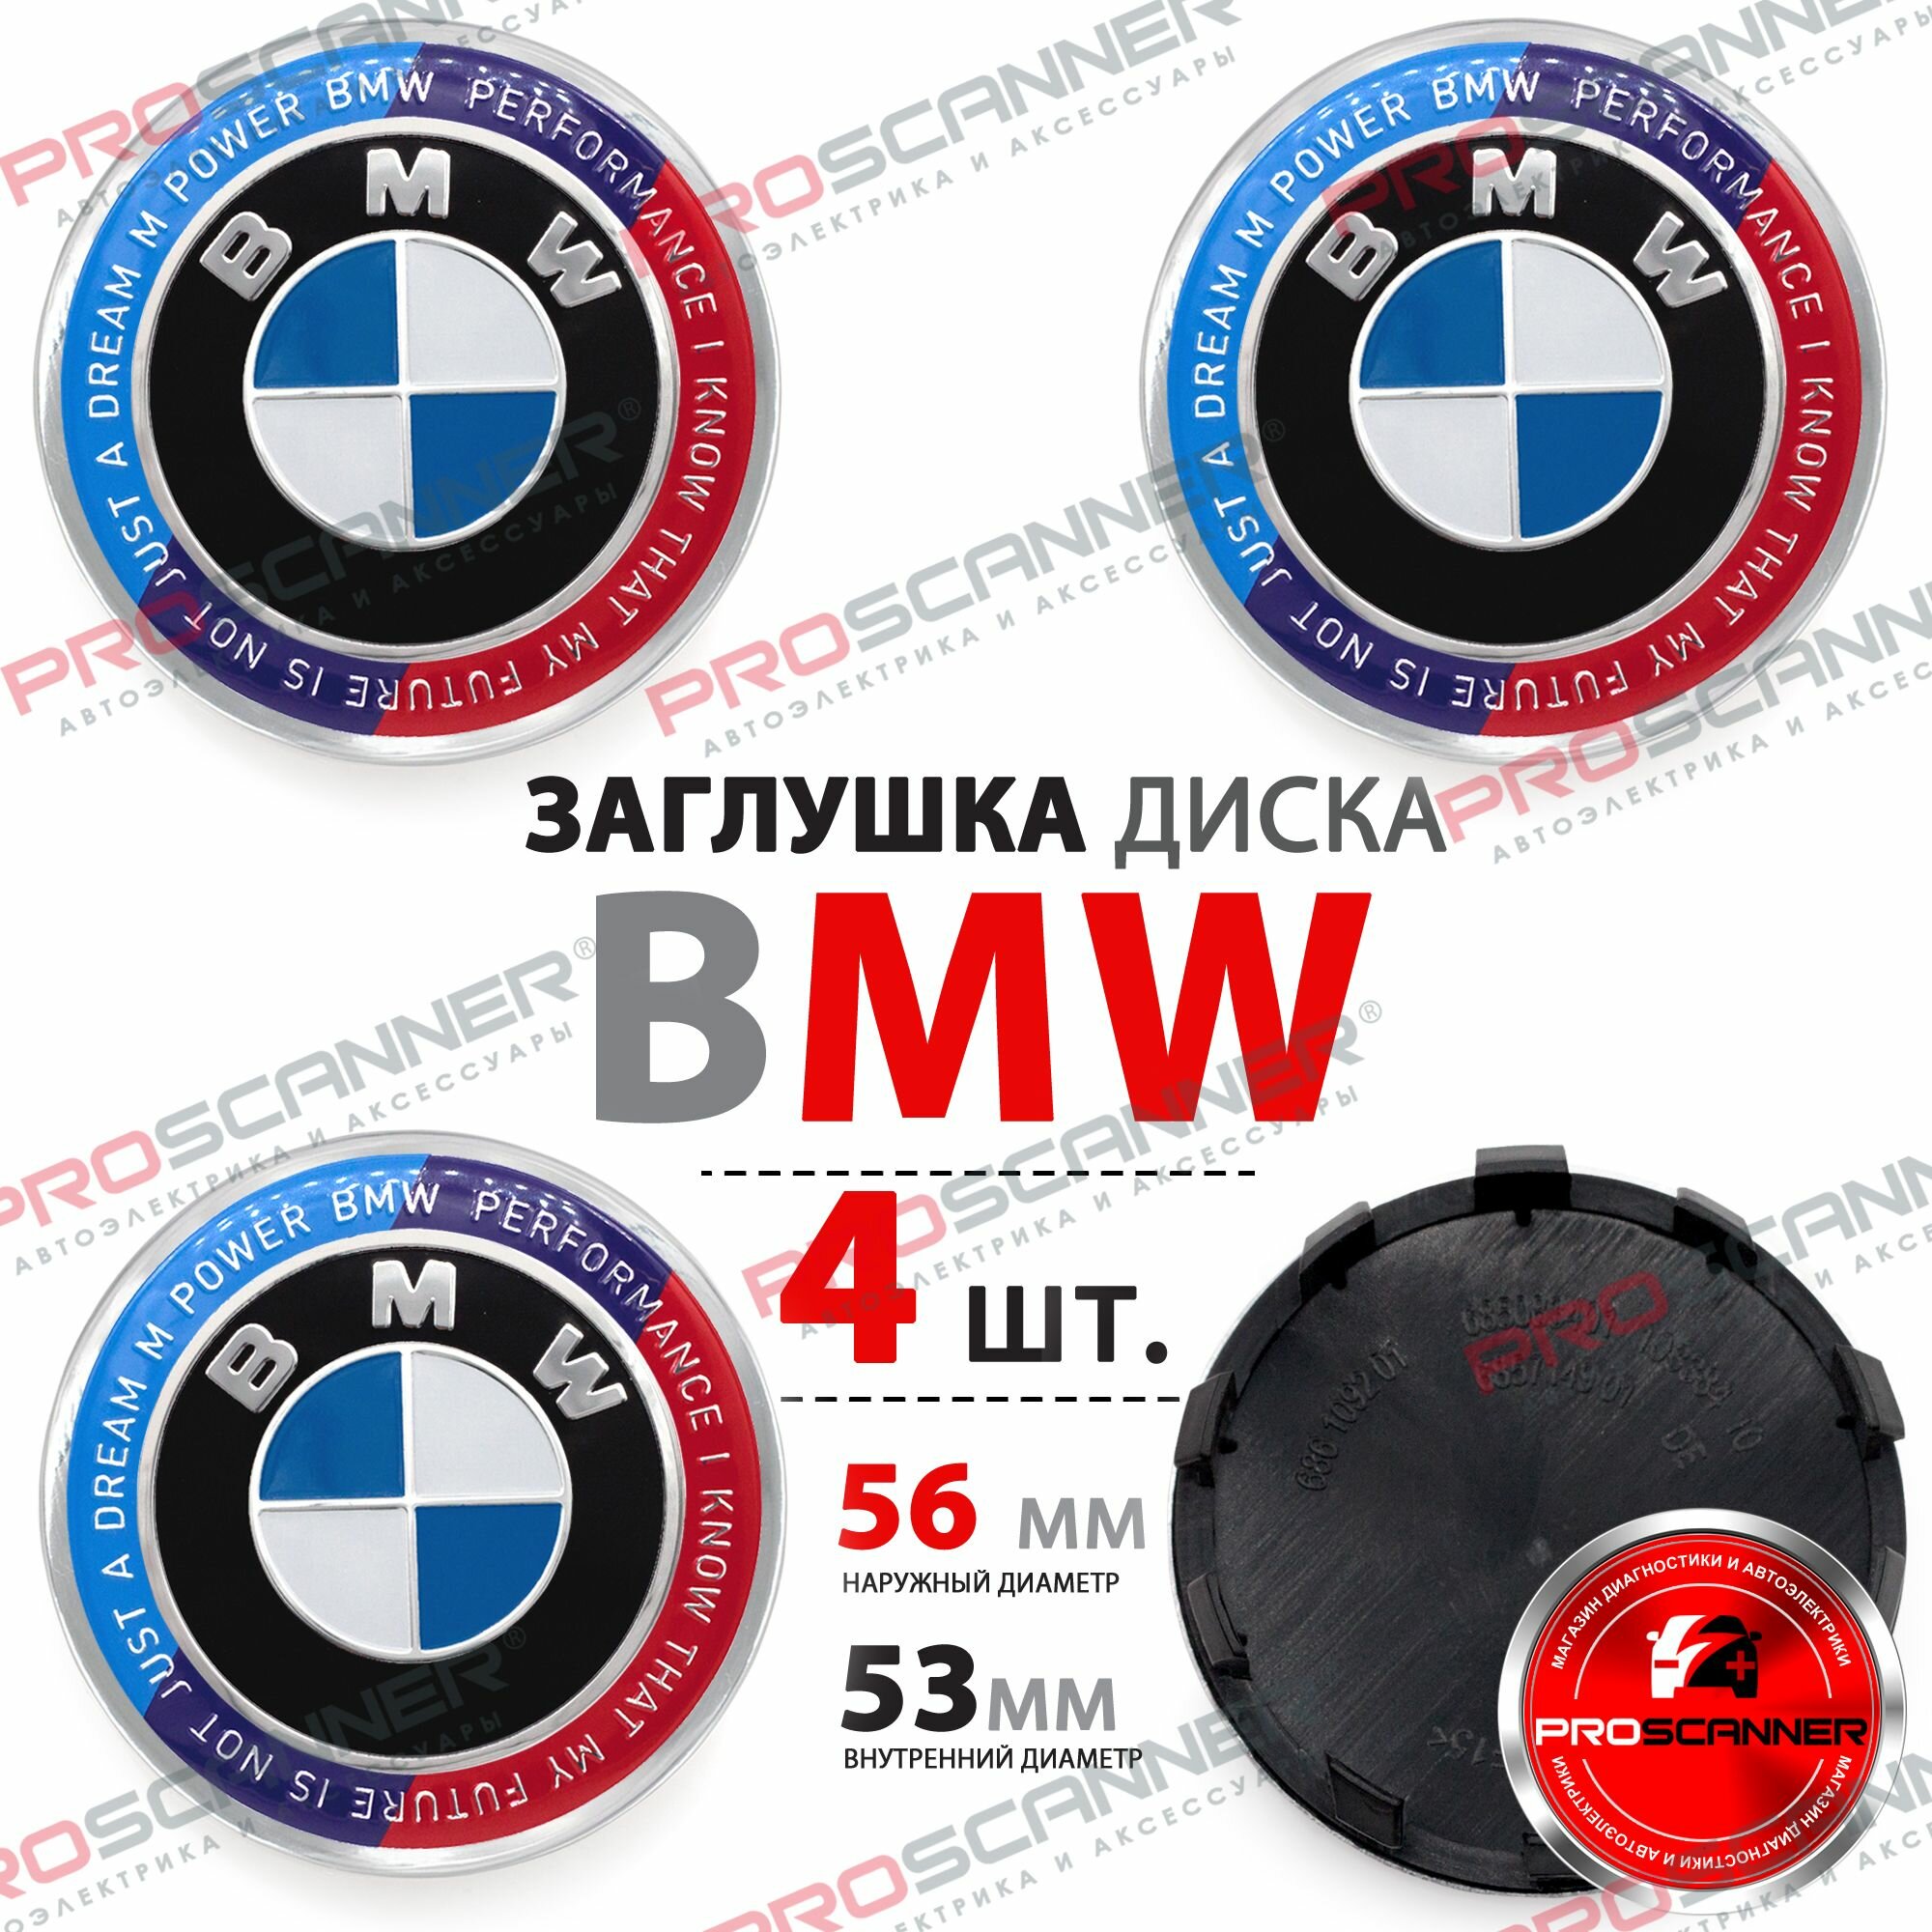 Колпачки заглушки на литой диск колеса для BMW БМВ 56 мм 36136850834 - комплект 4 штуки черно-белый